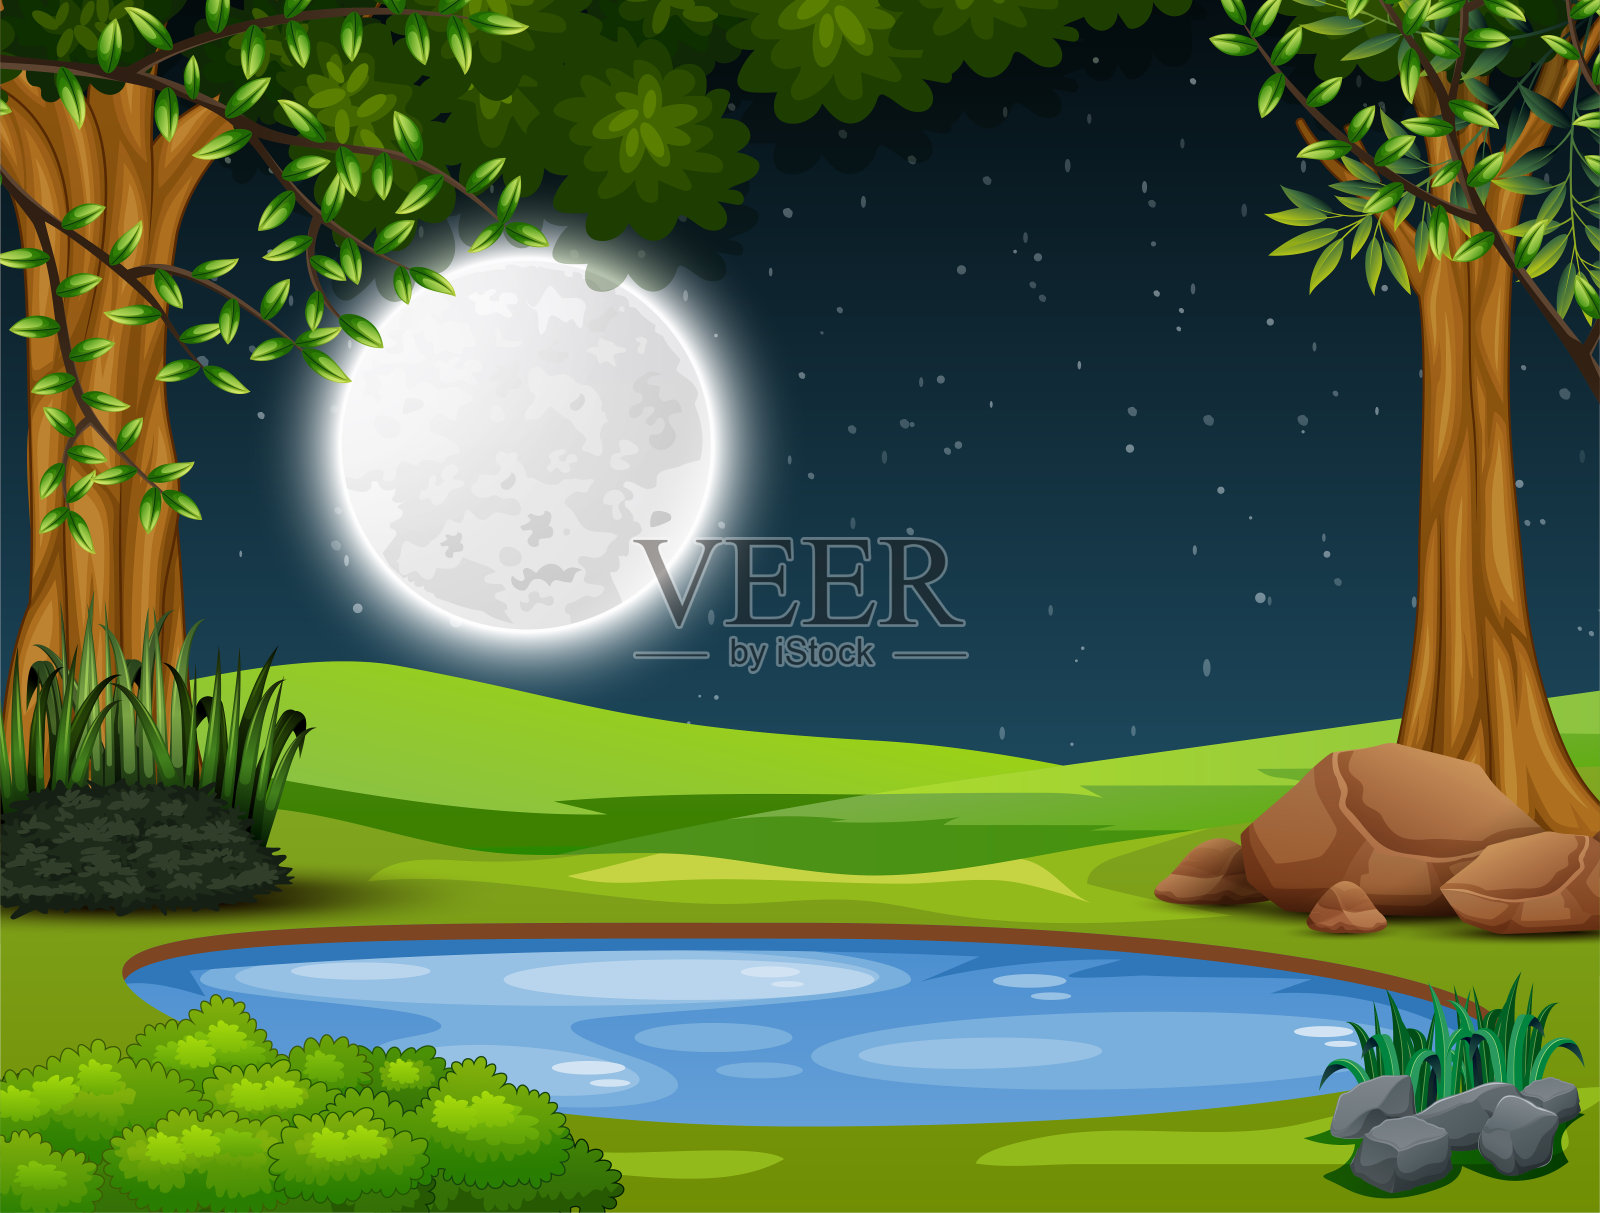 森林中央的小池塘夜景插画图片素材